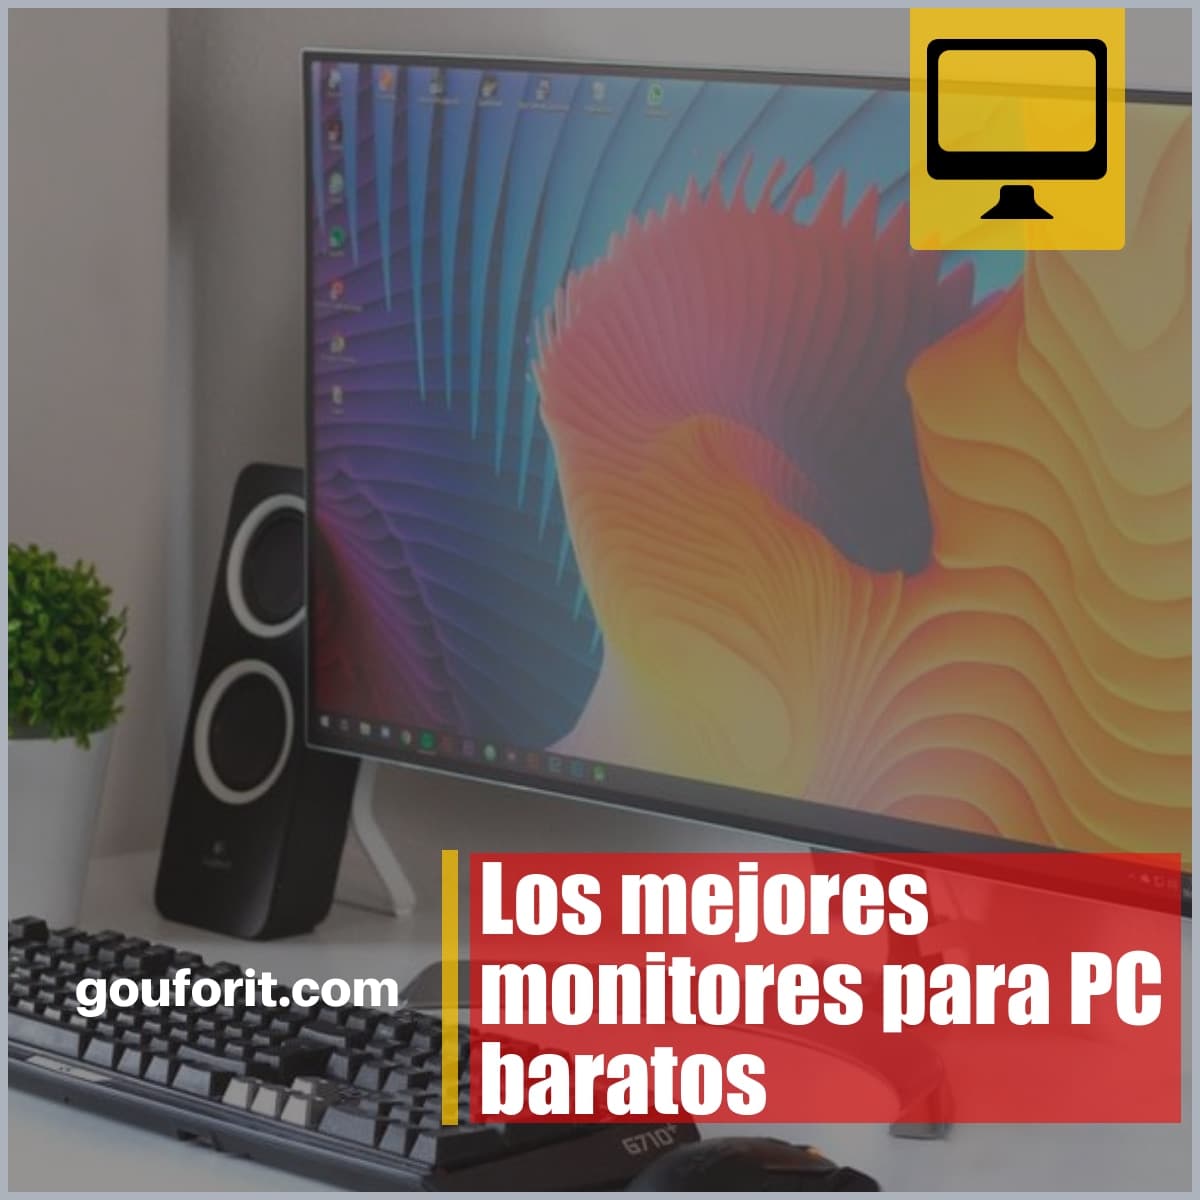 Los mejores monitores para PC baratos